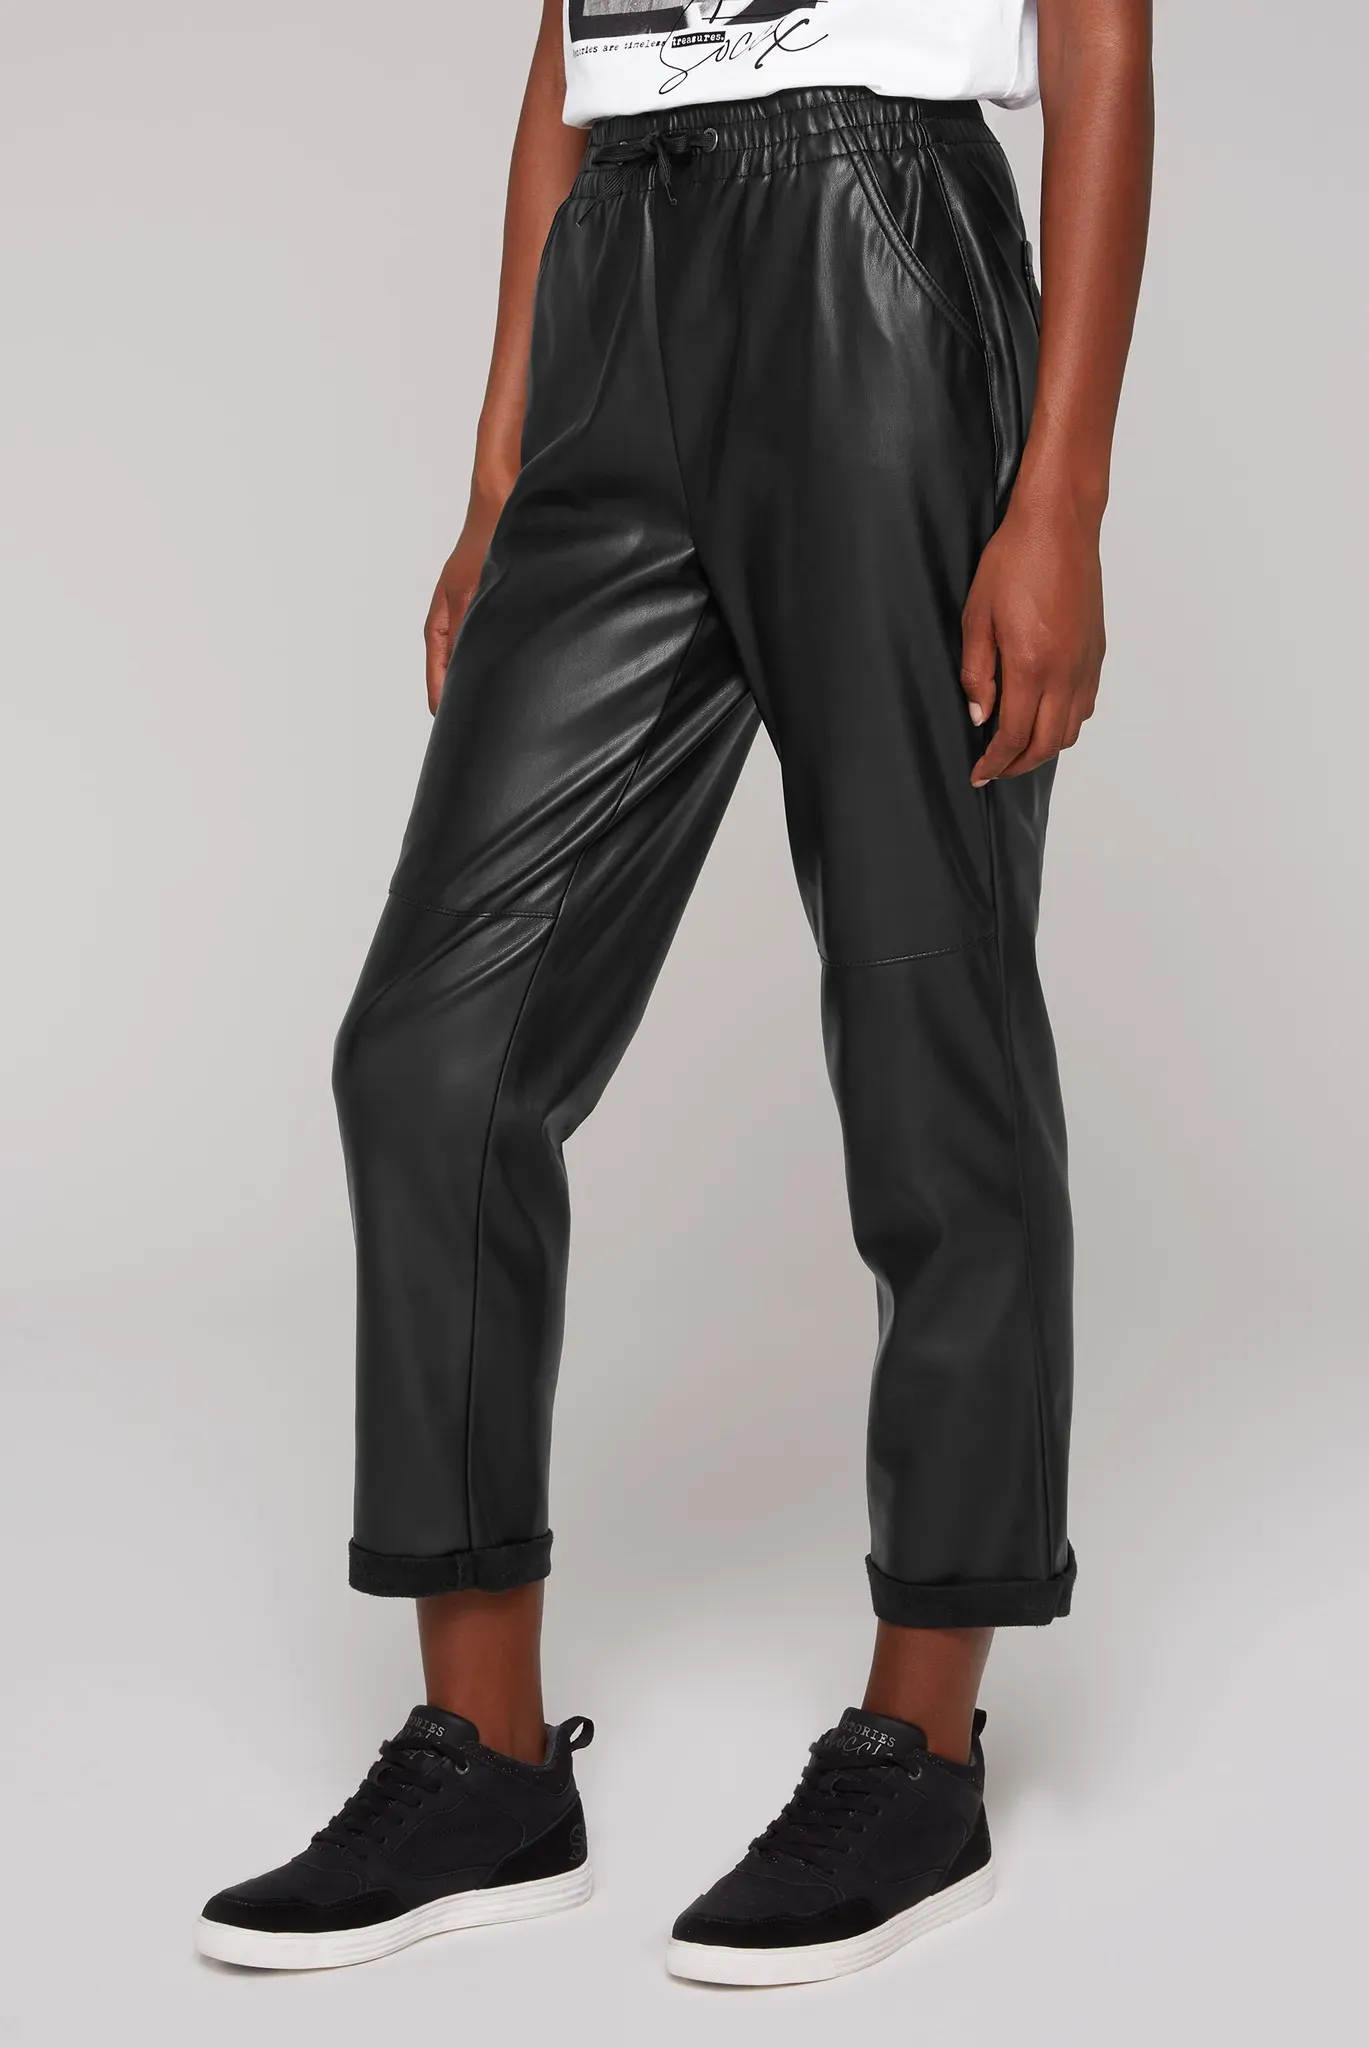 Lederimitathose SOCCX Gr. M, Normalgrößen, schwarz Damen Hosen Kunstlederhosen mit Gesäßtaschen